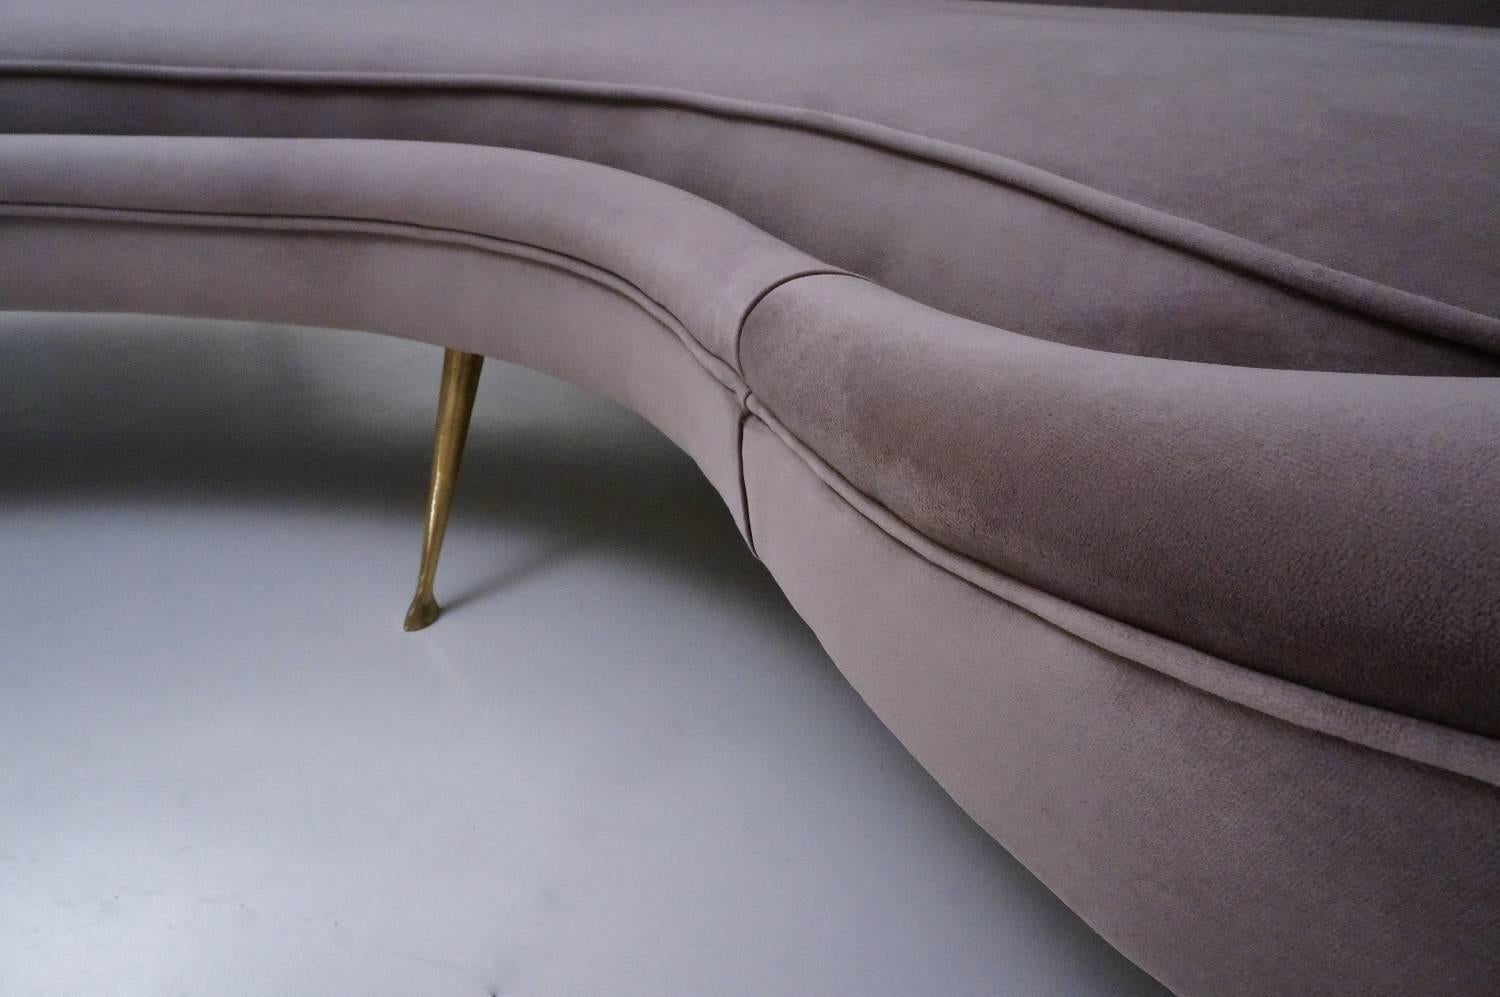 Brass Ico Parisi Sofa 1950s Style in New Velvet Upholstery, Italian For Sale